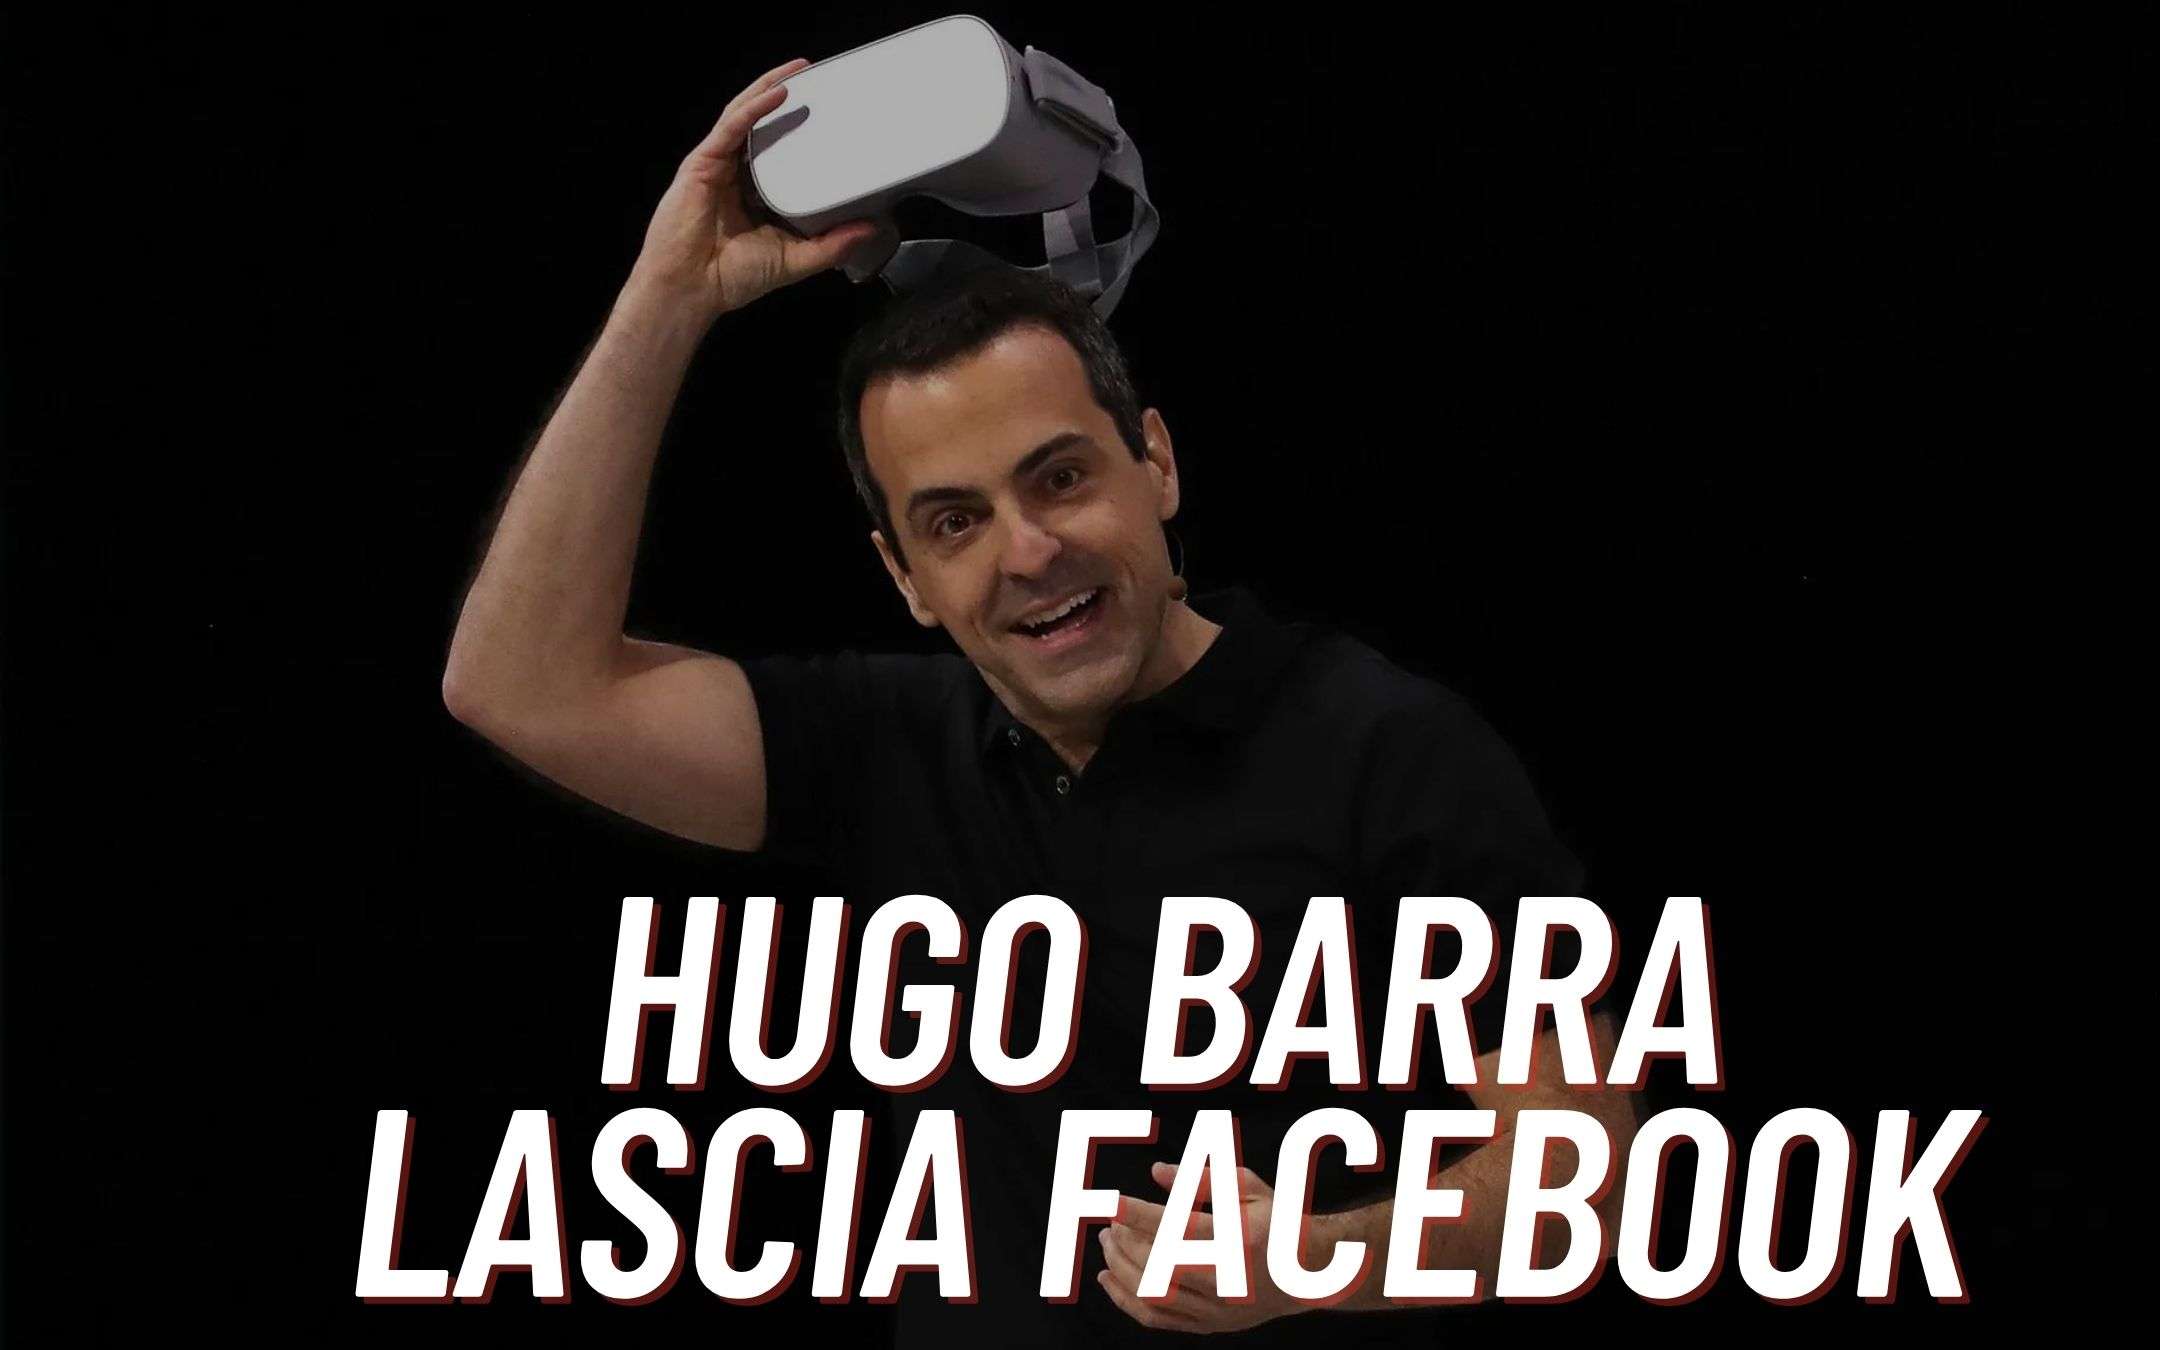 Hugo Barra si licenzia da Facebook (UFFICIALE)